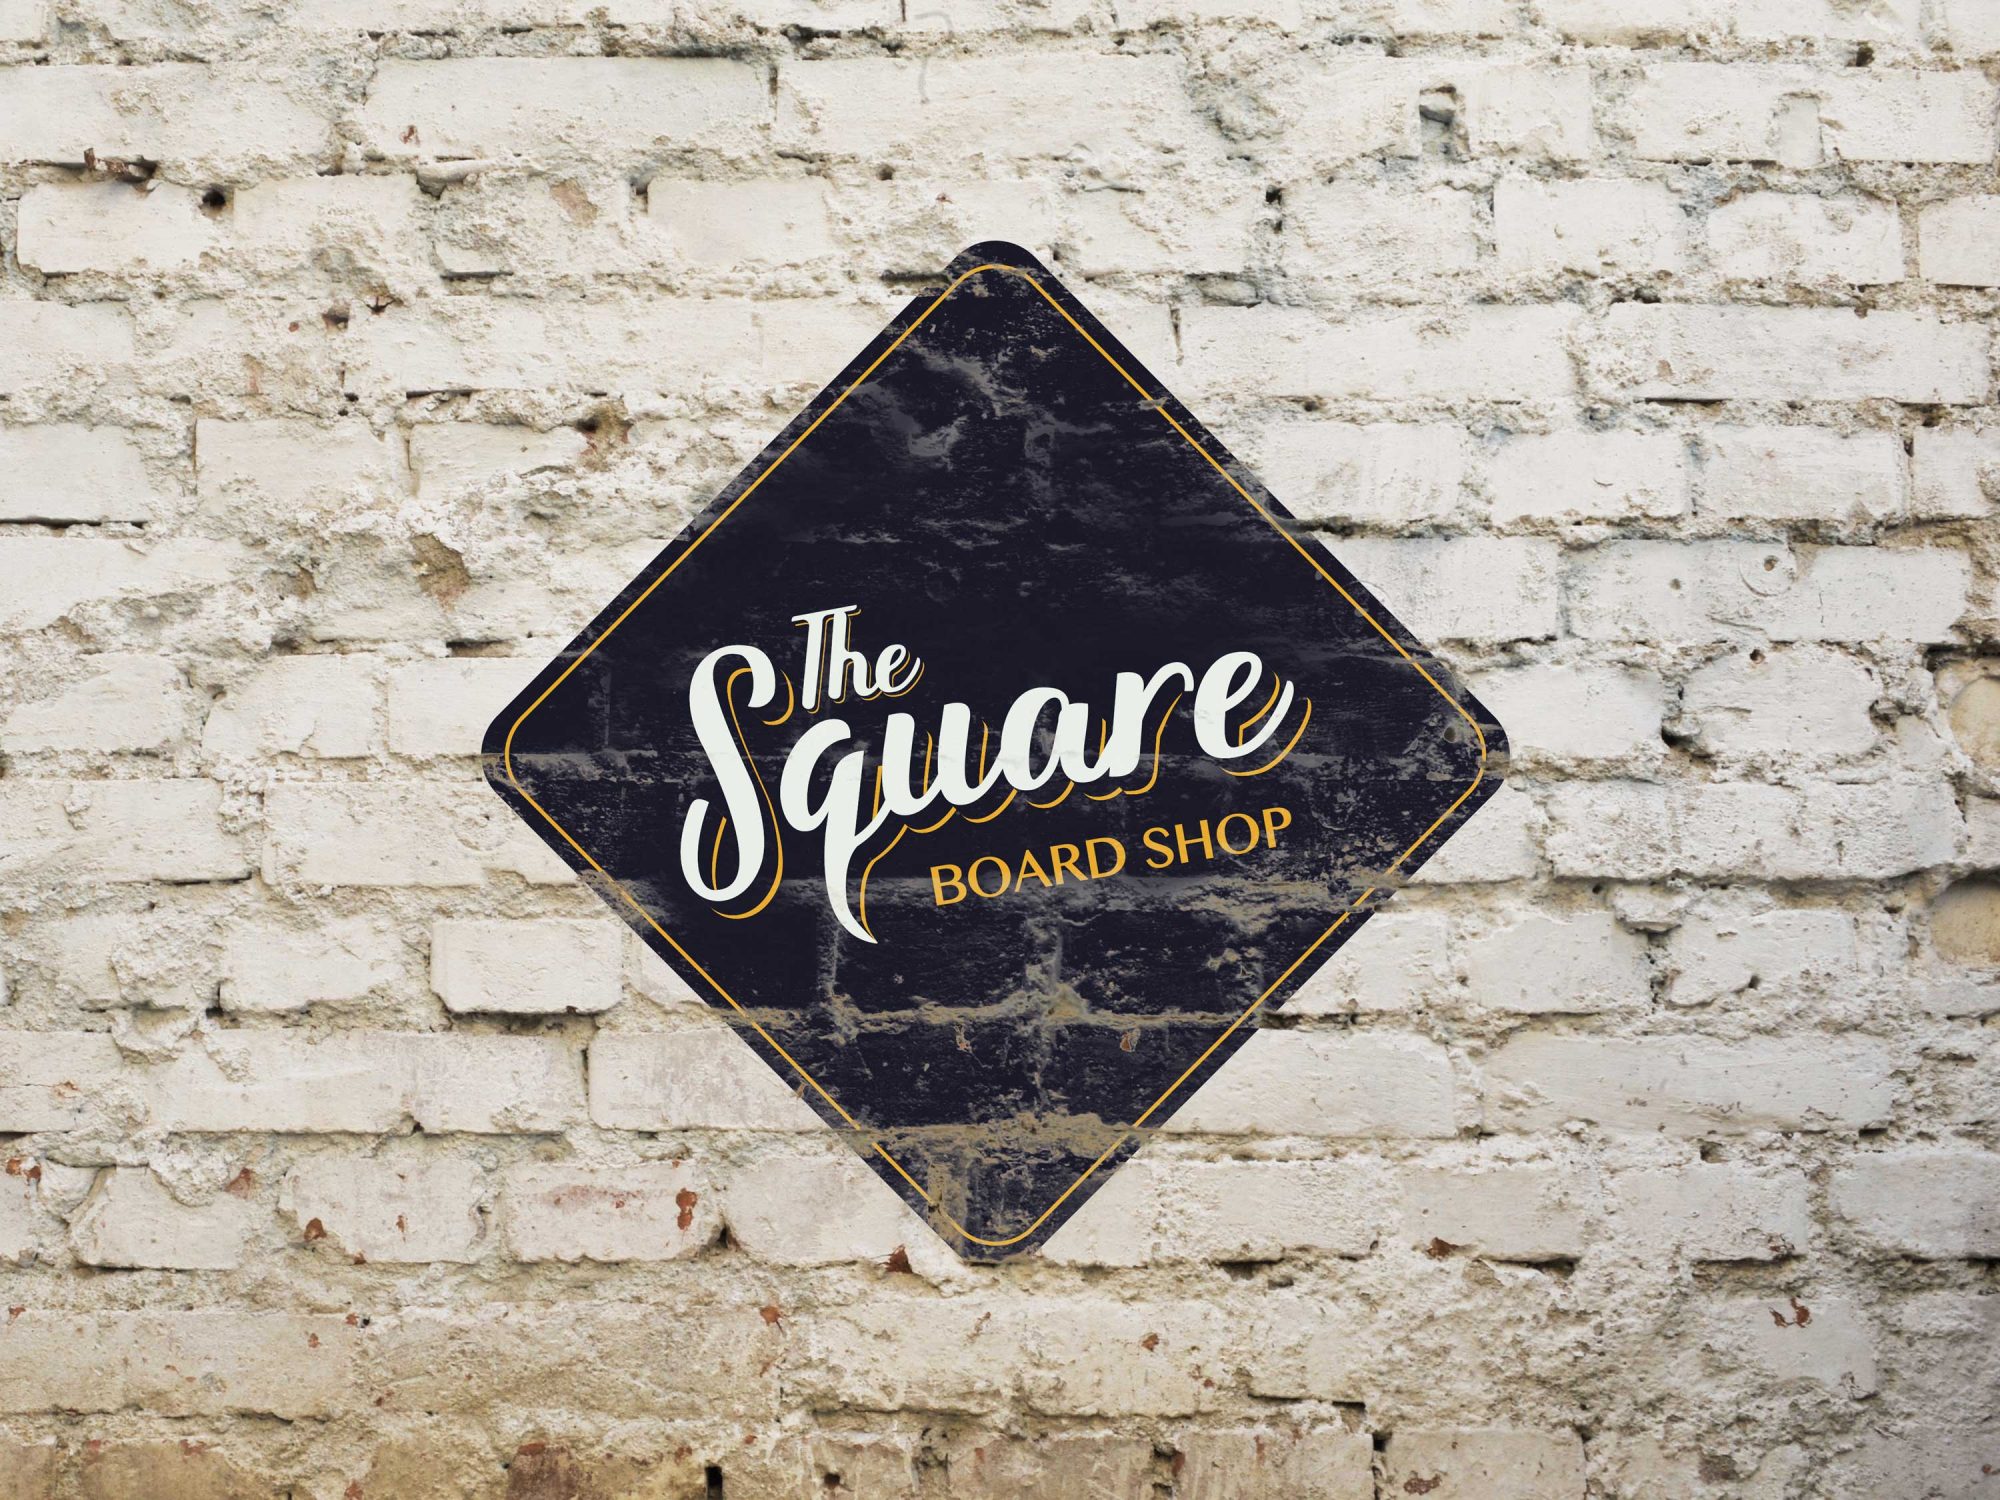 The Square Board Shop